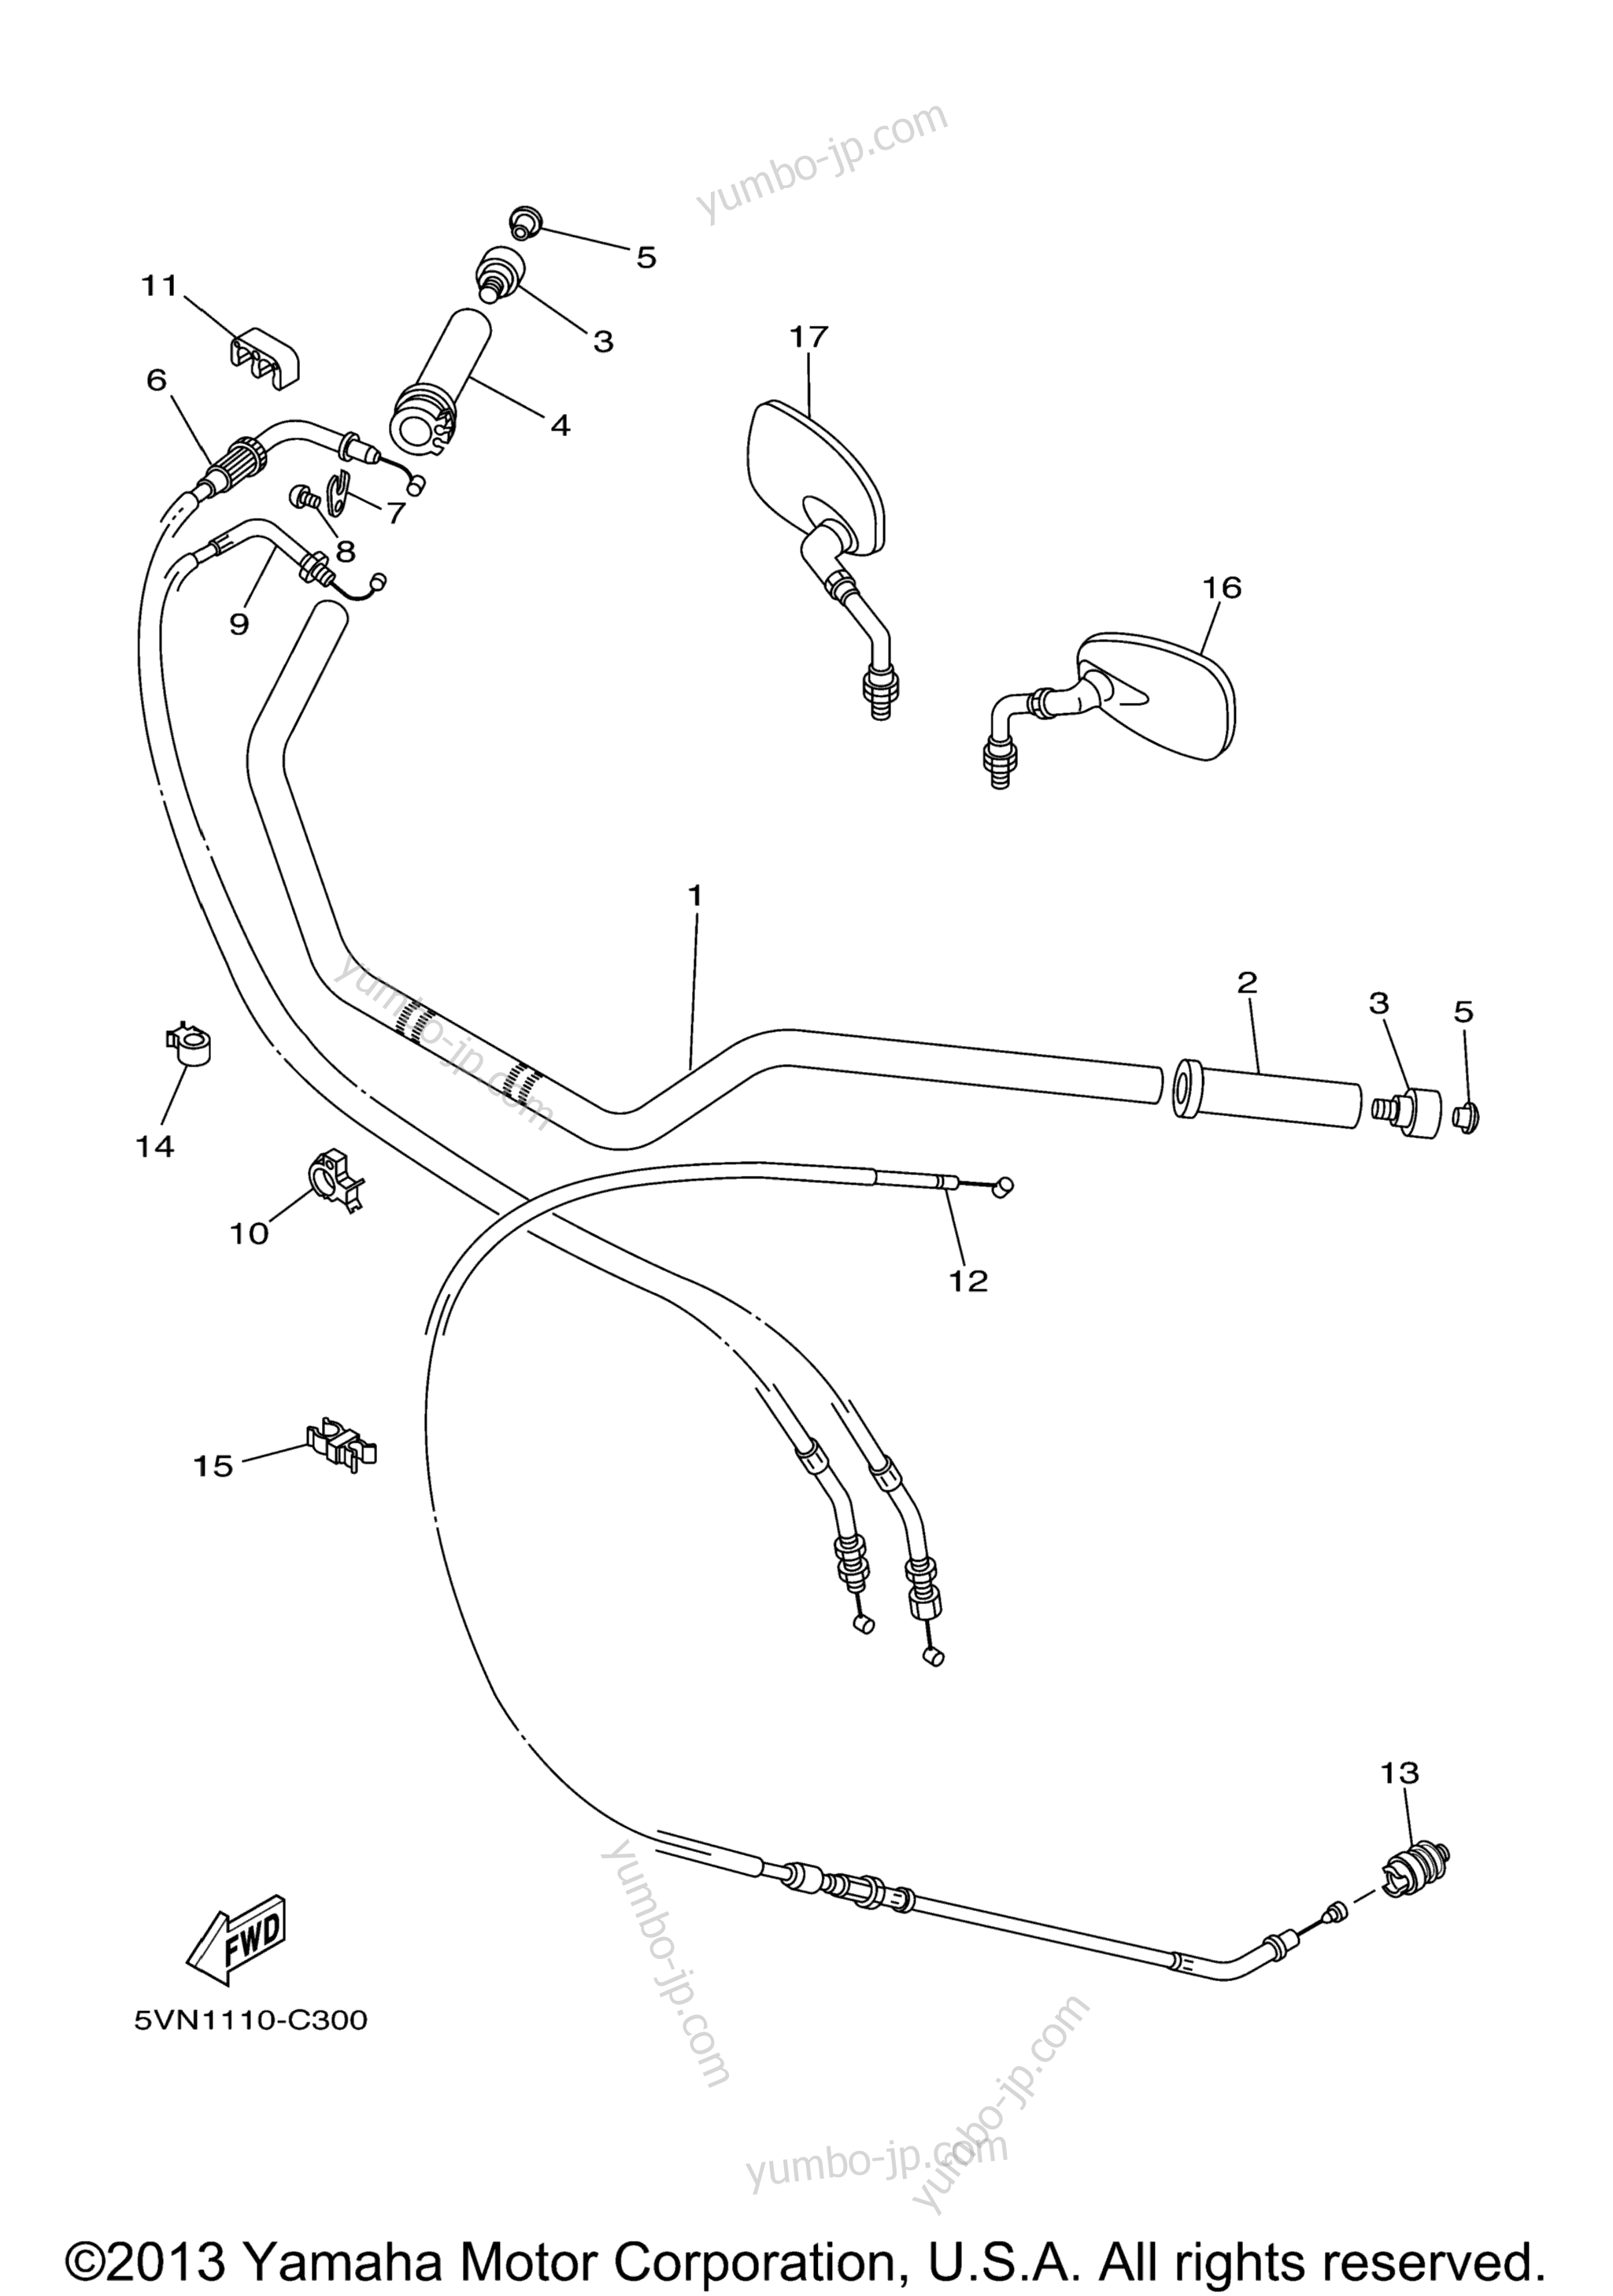 Steering Handle Cable for motorcycles YAMAHA ROAD STAR SILVERADO S (XV17ATSDL) 2013 year